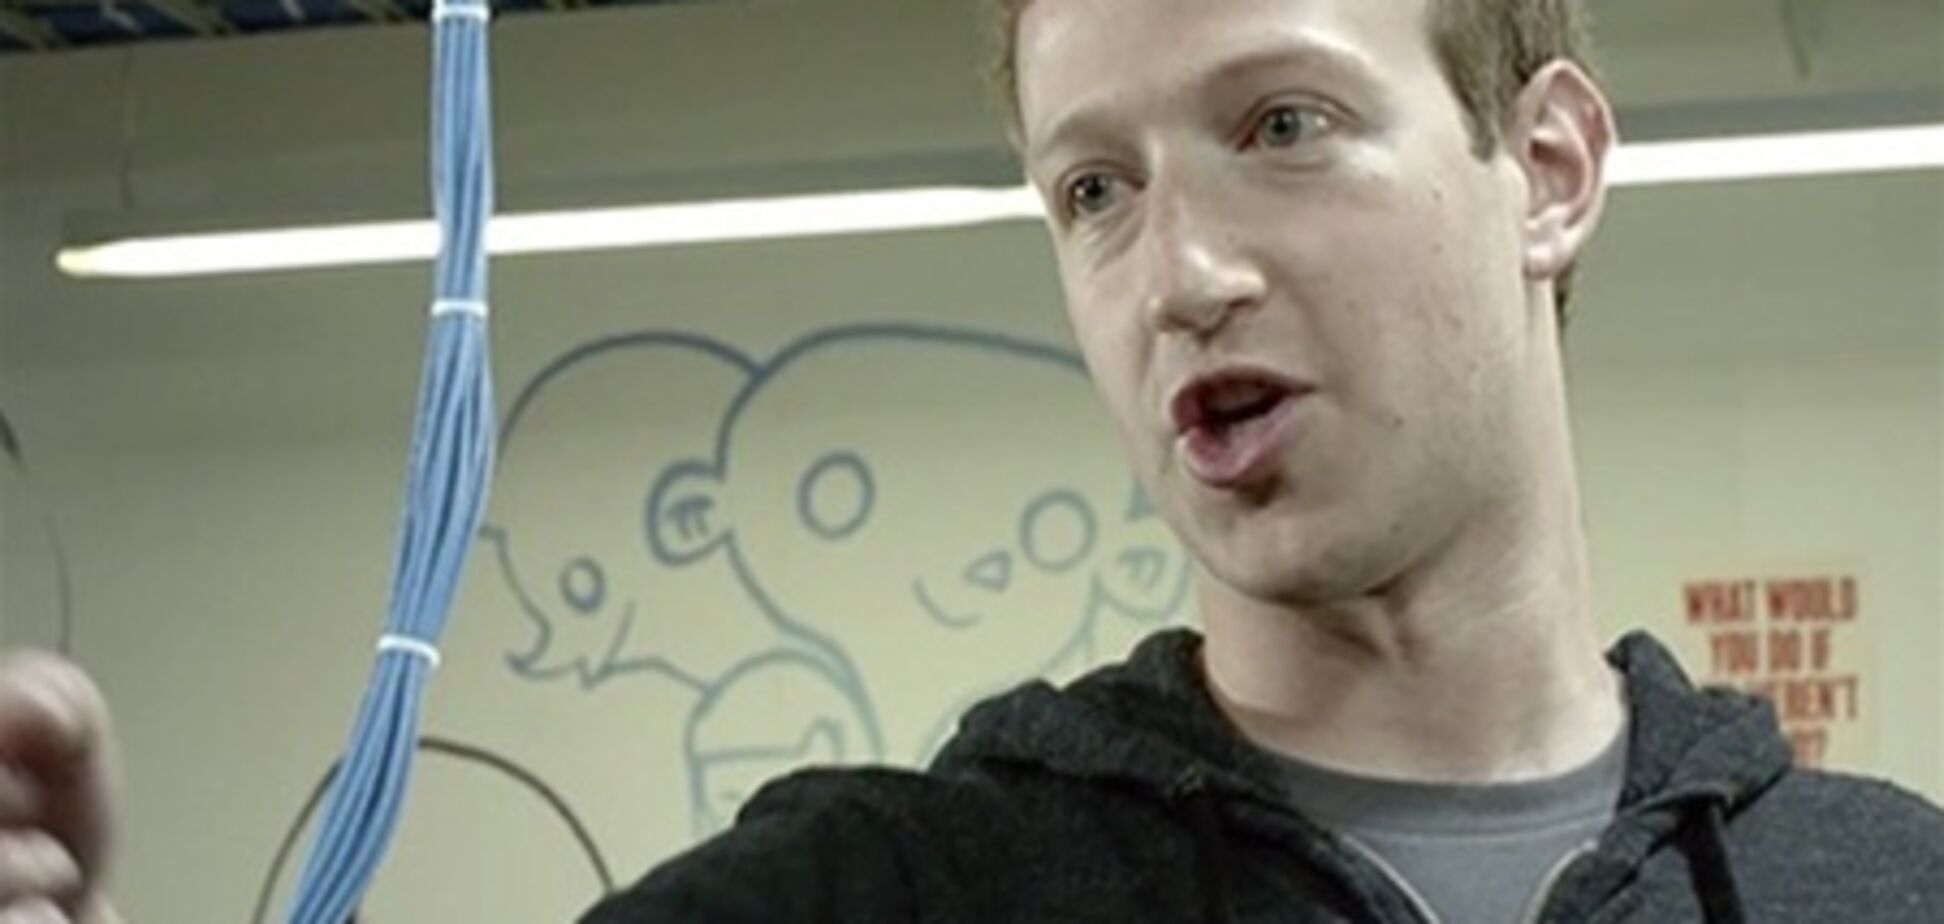 Основатель Facebook снялся в рекламном ролике. Фото. Видео